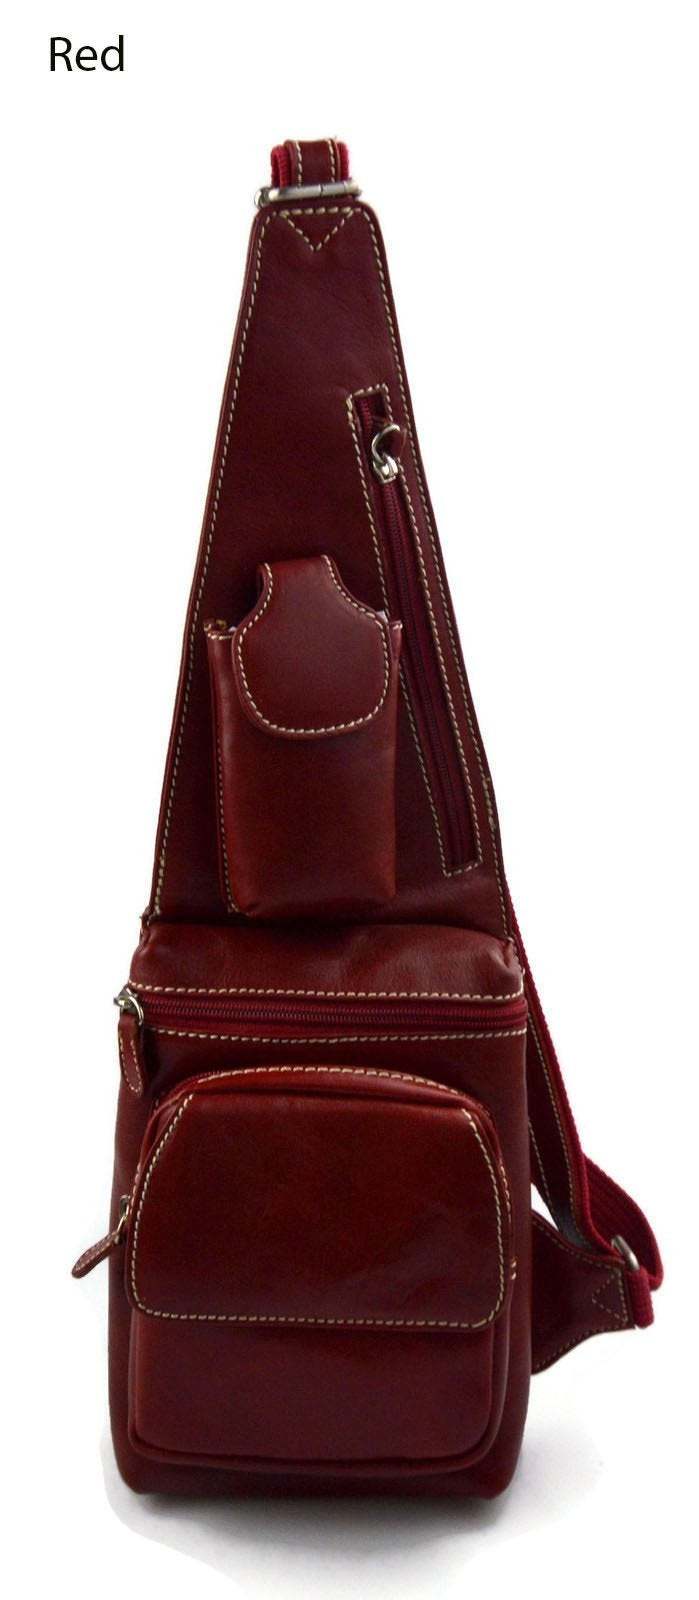 Primary image for Men waist leather bag shoulder bag travel bag sling backpack satchel red bag 